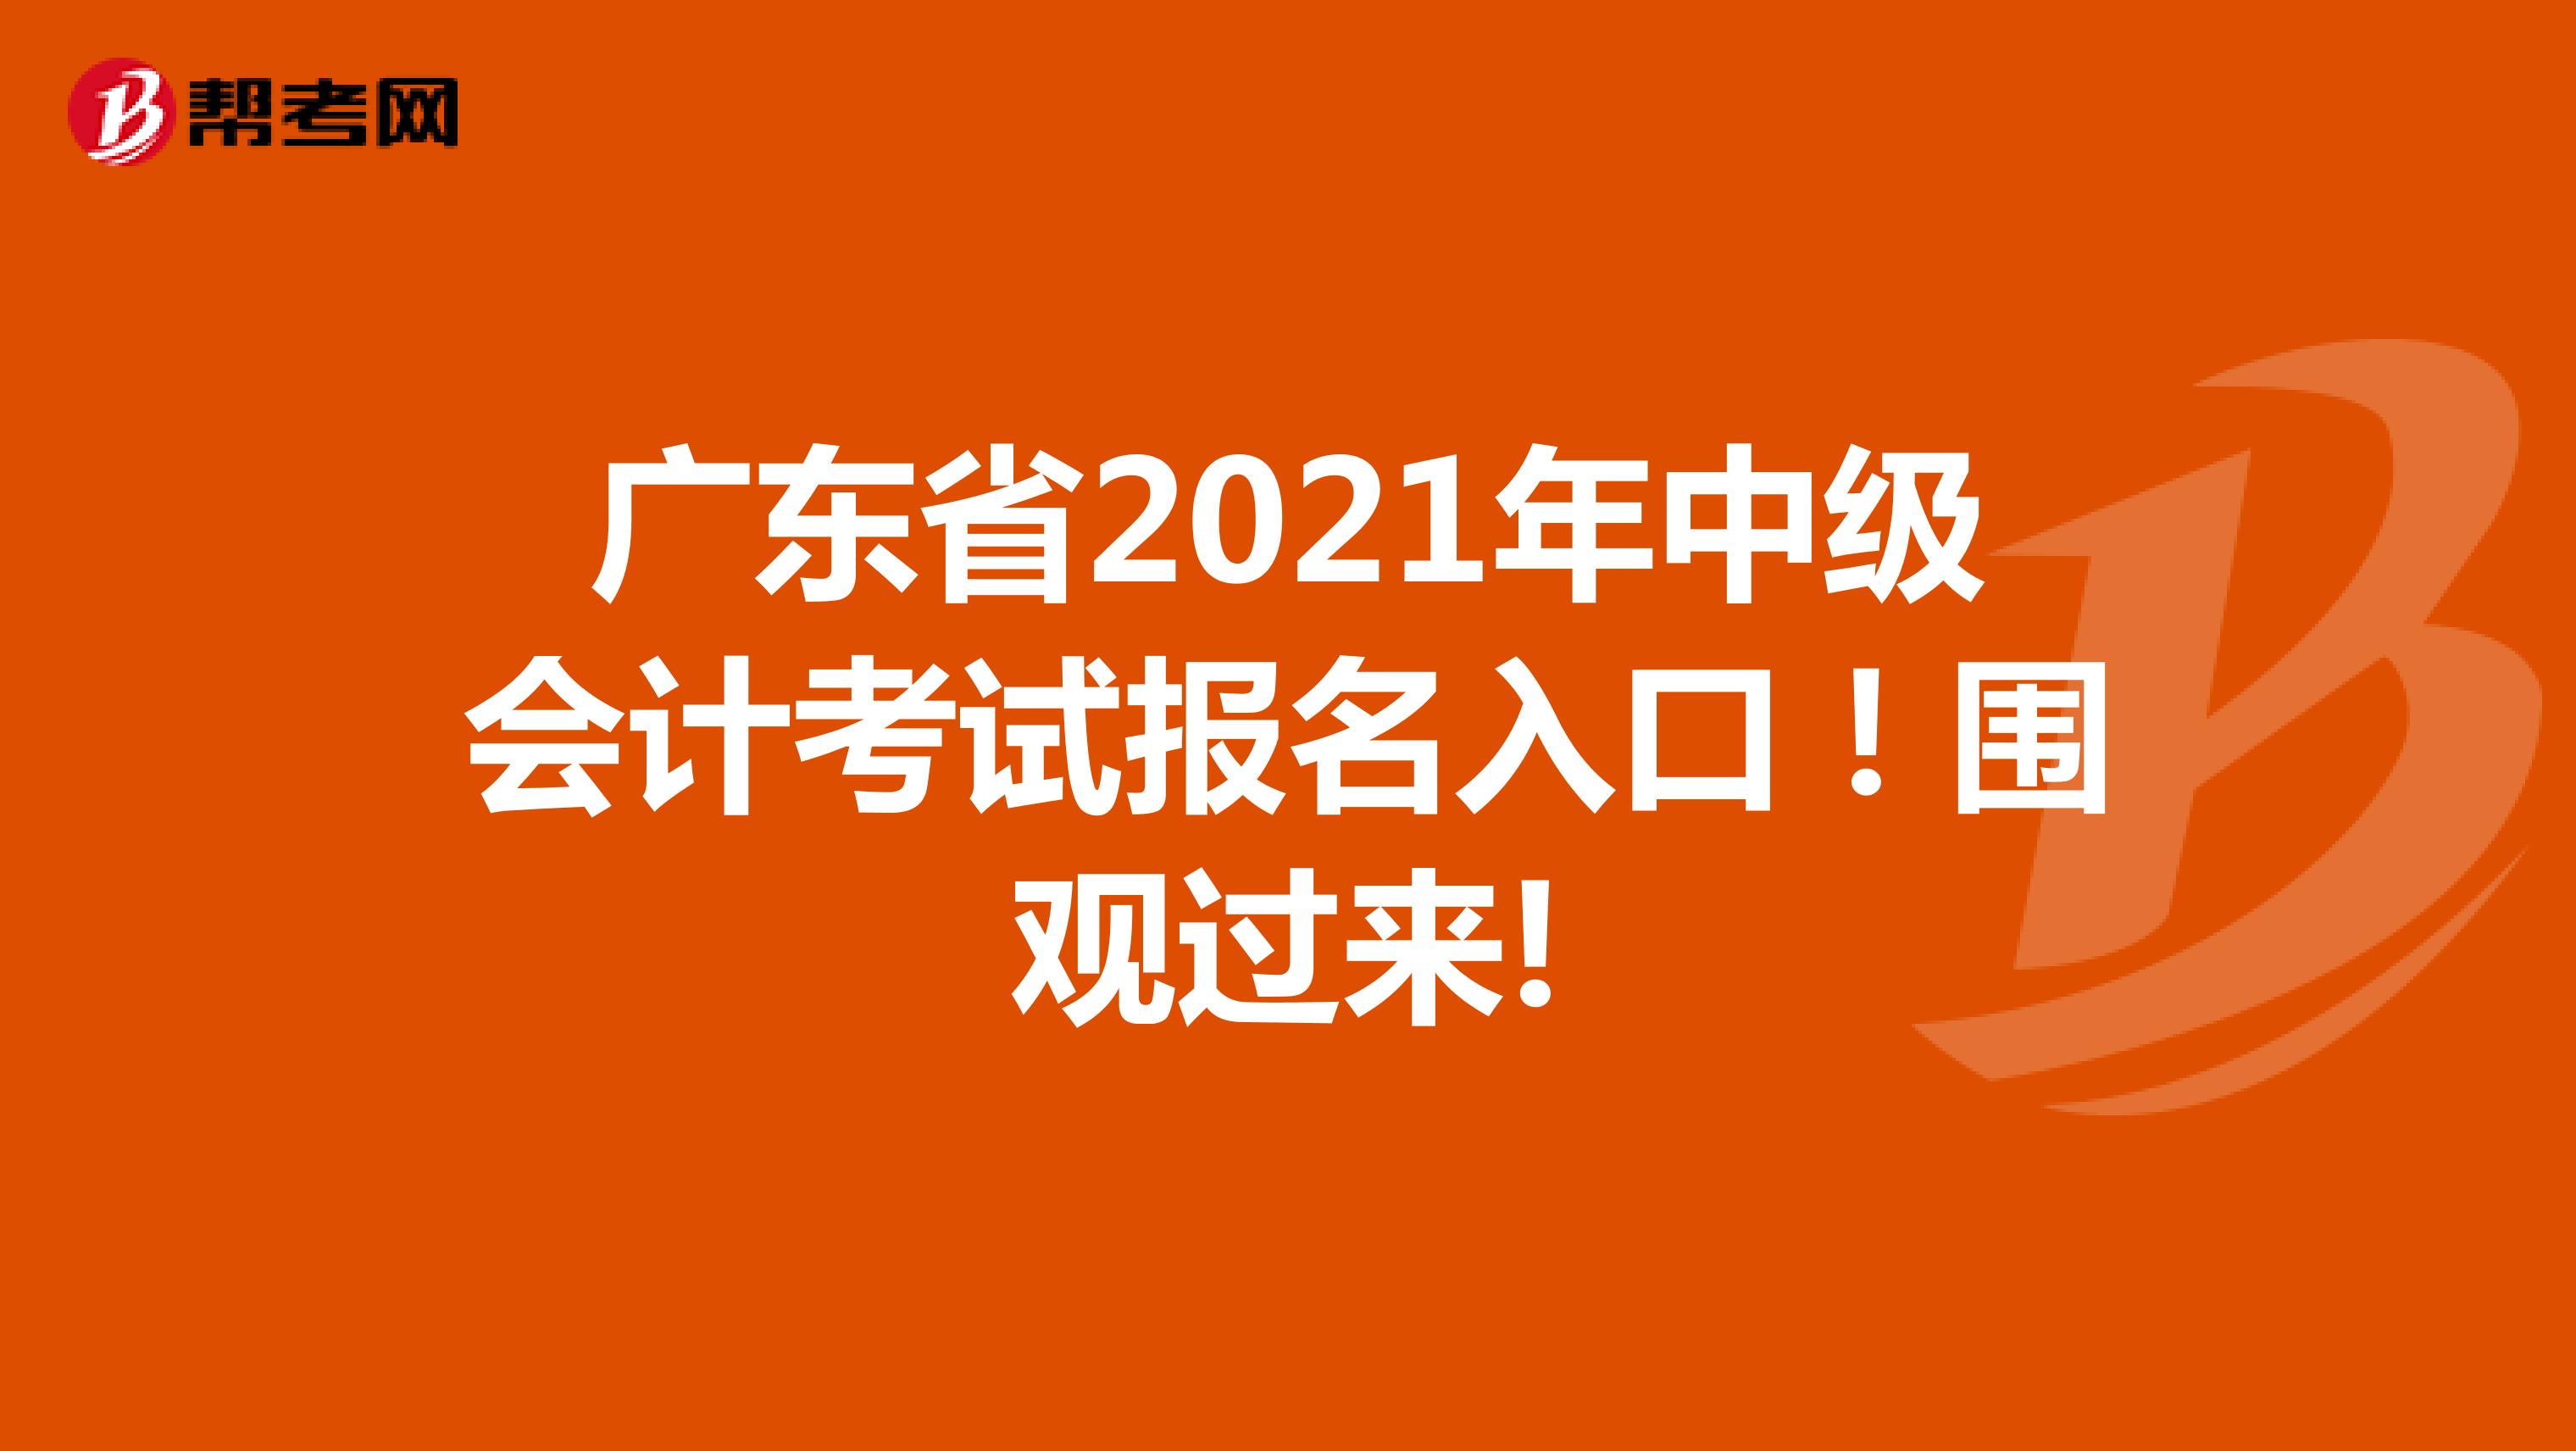 广东省2021年中级会计考试报名入口！围观过来!